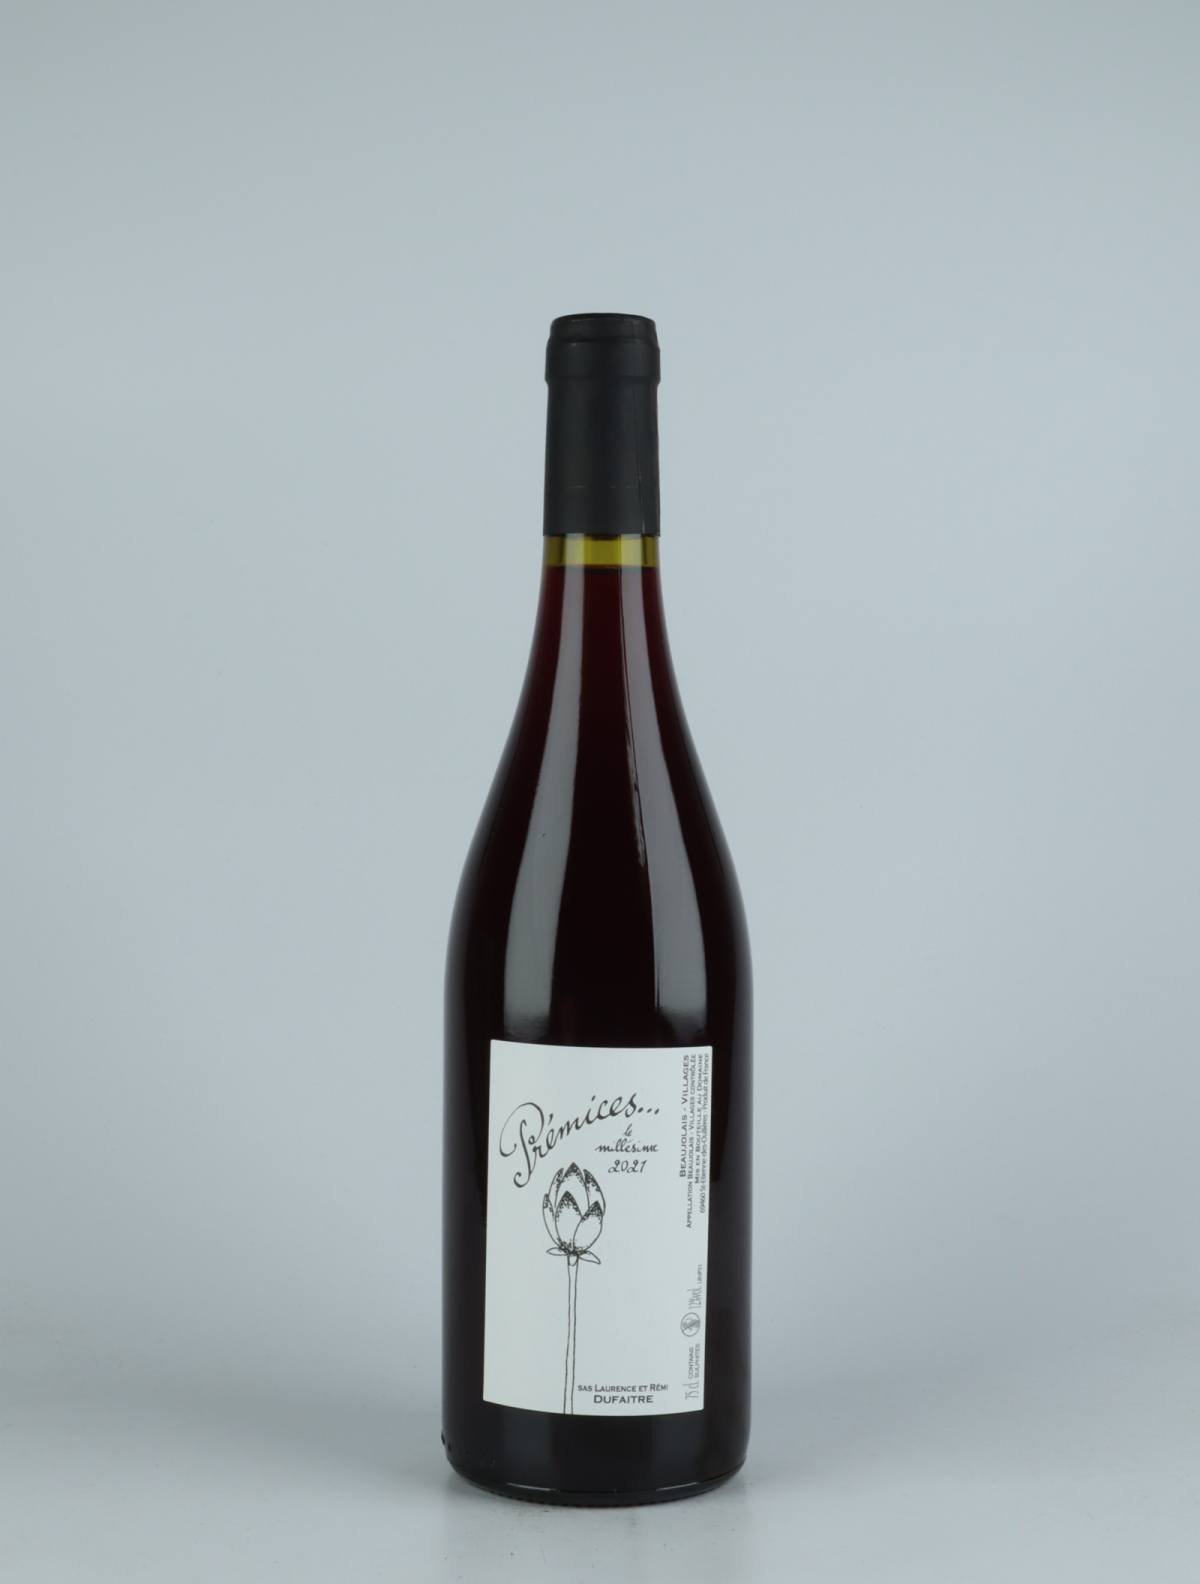 En flaske 2021 Beaujolais Villages - Prémices Rødvin fra Laurence & Rémi Dufaitre, Beaujolais i Frankrig